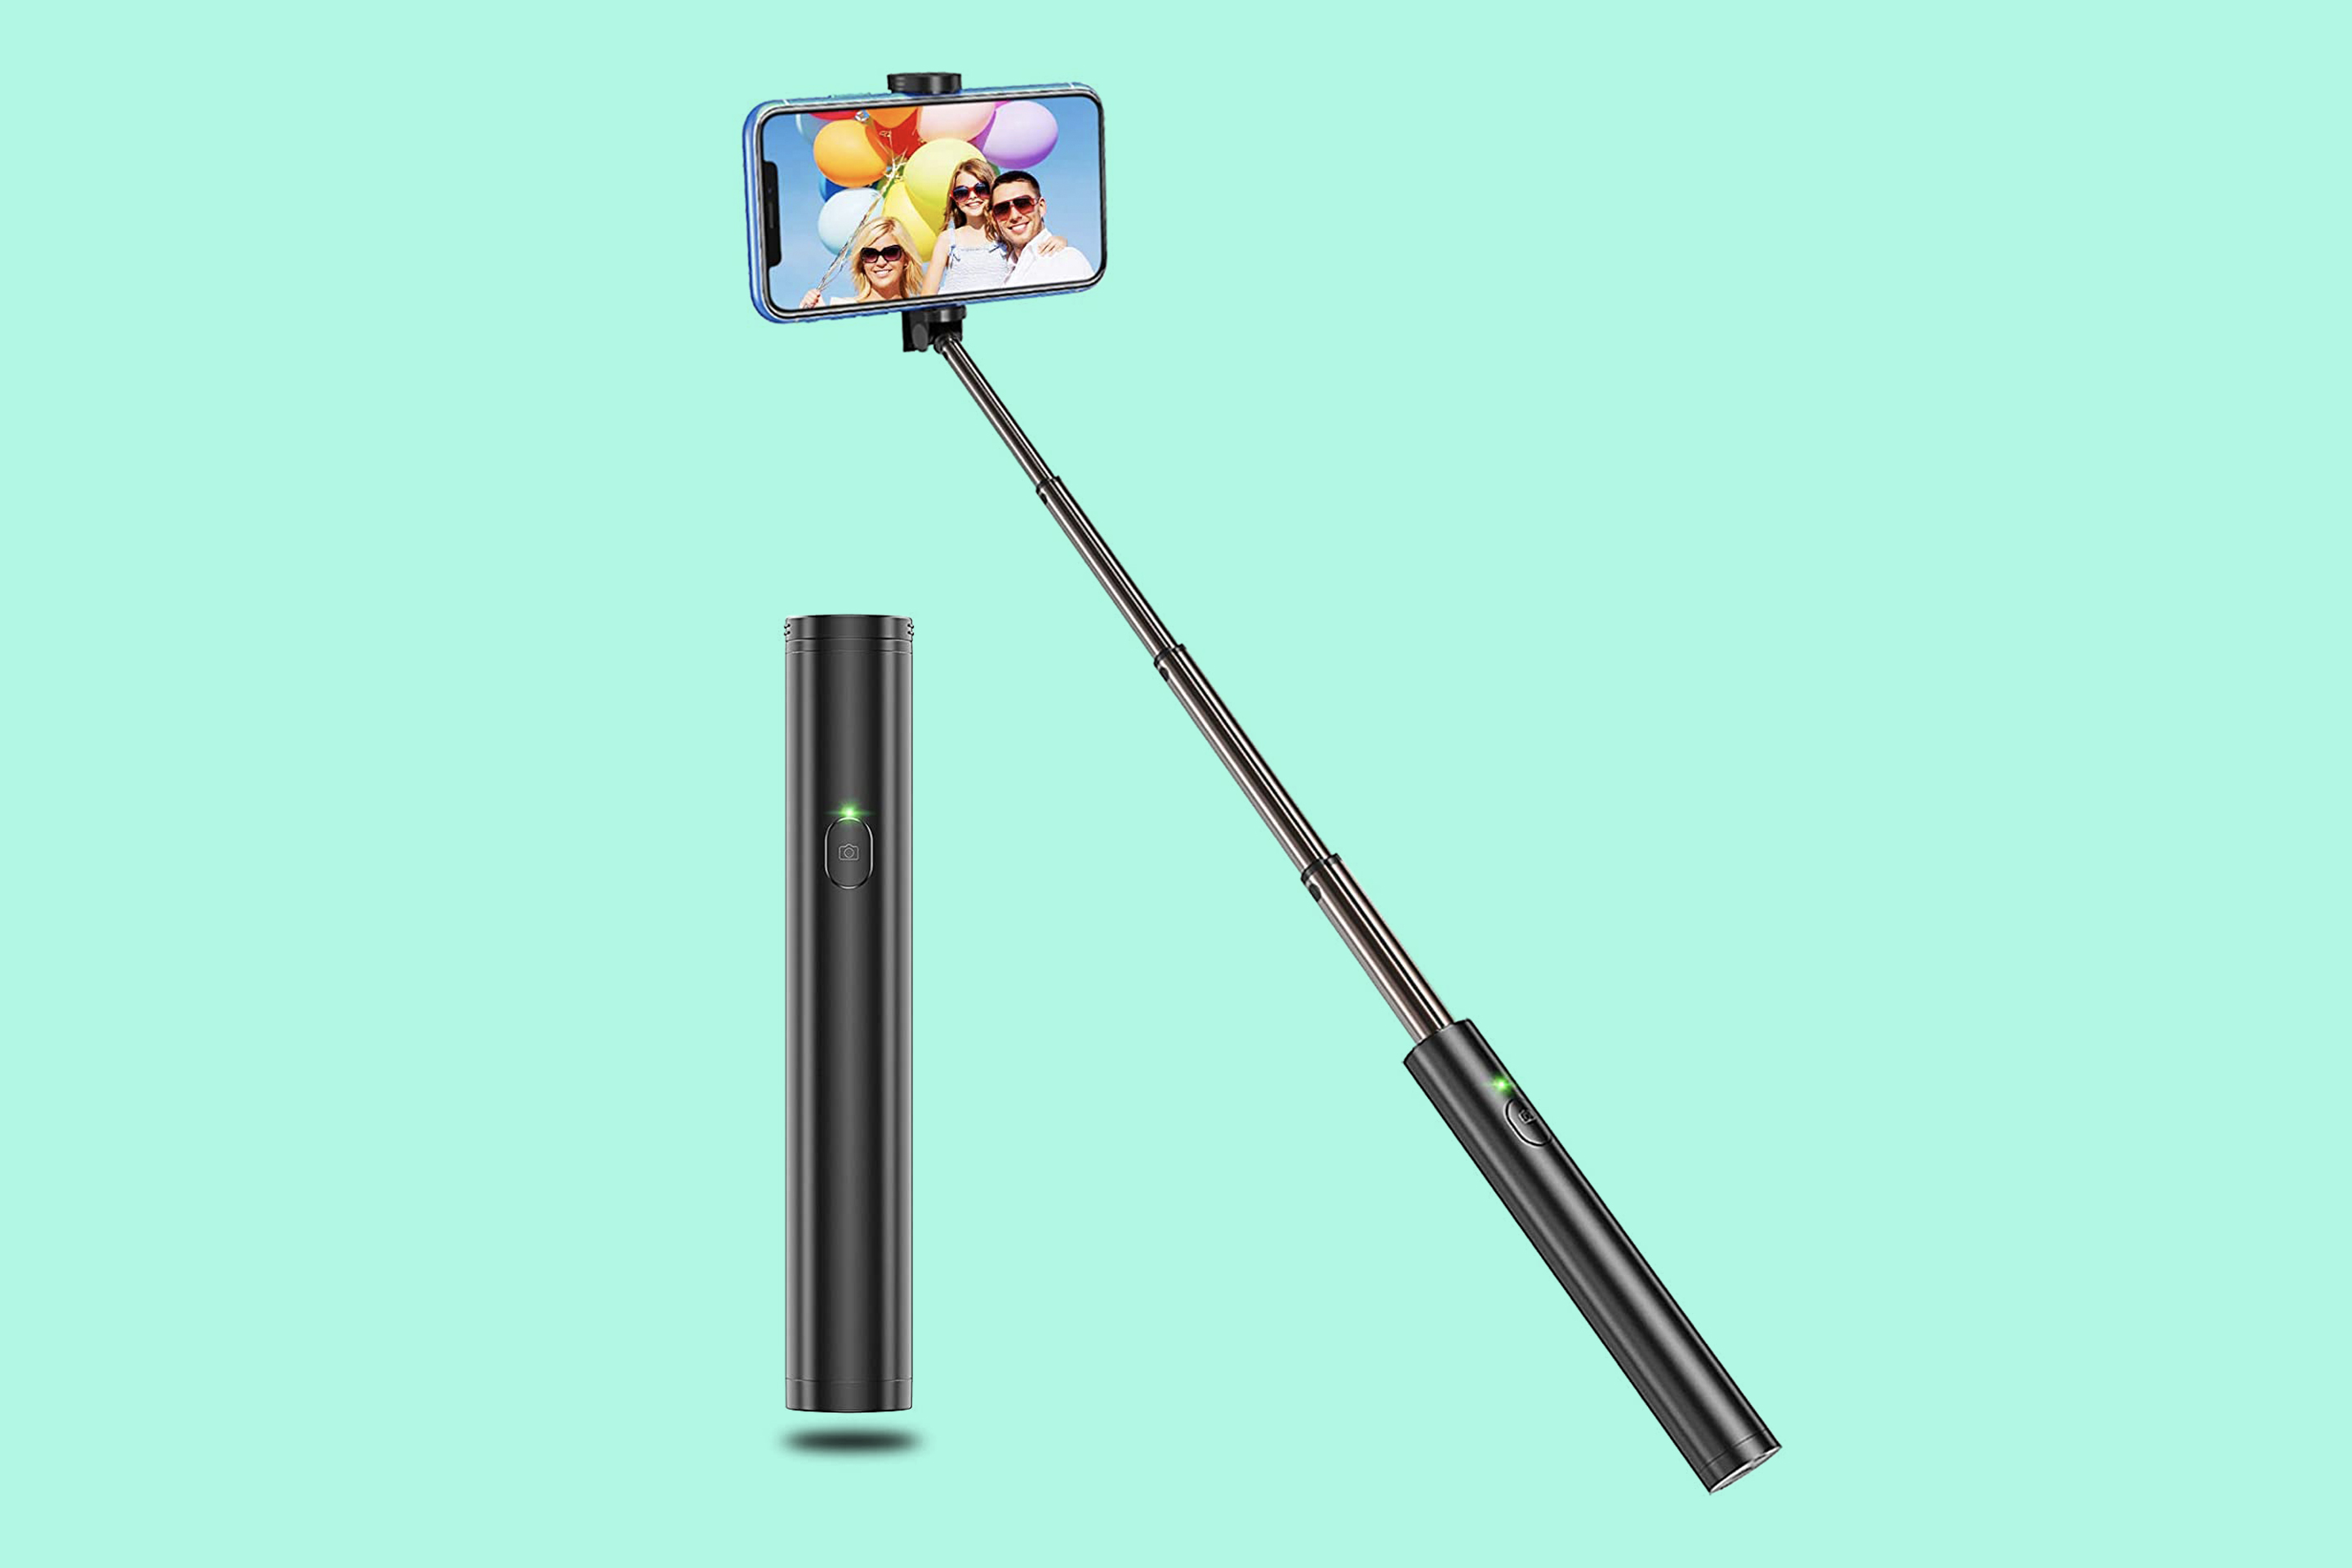 Vproof Lightweight Aluminum Selfie Stick